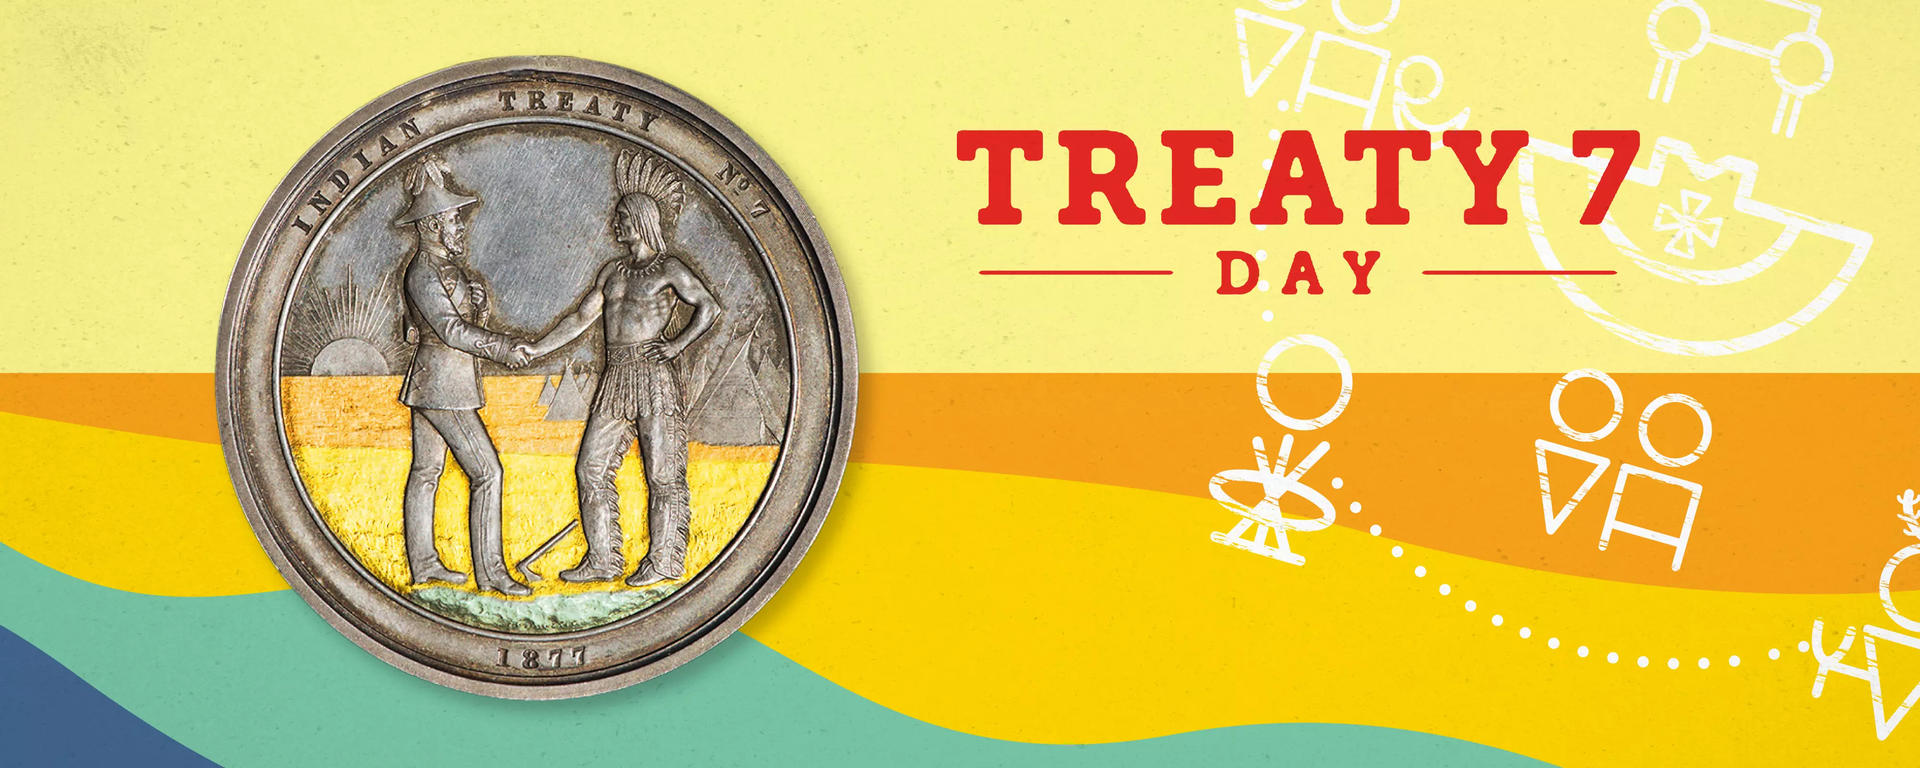 Treaty 7 Day